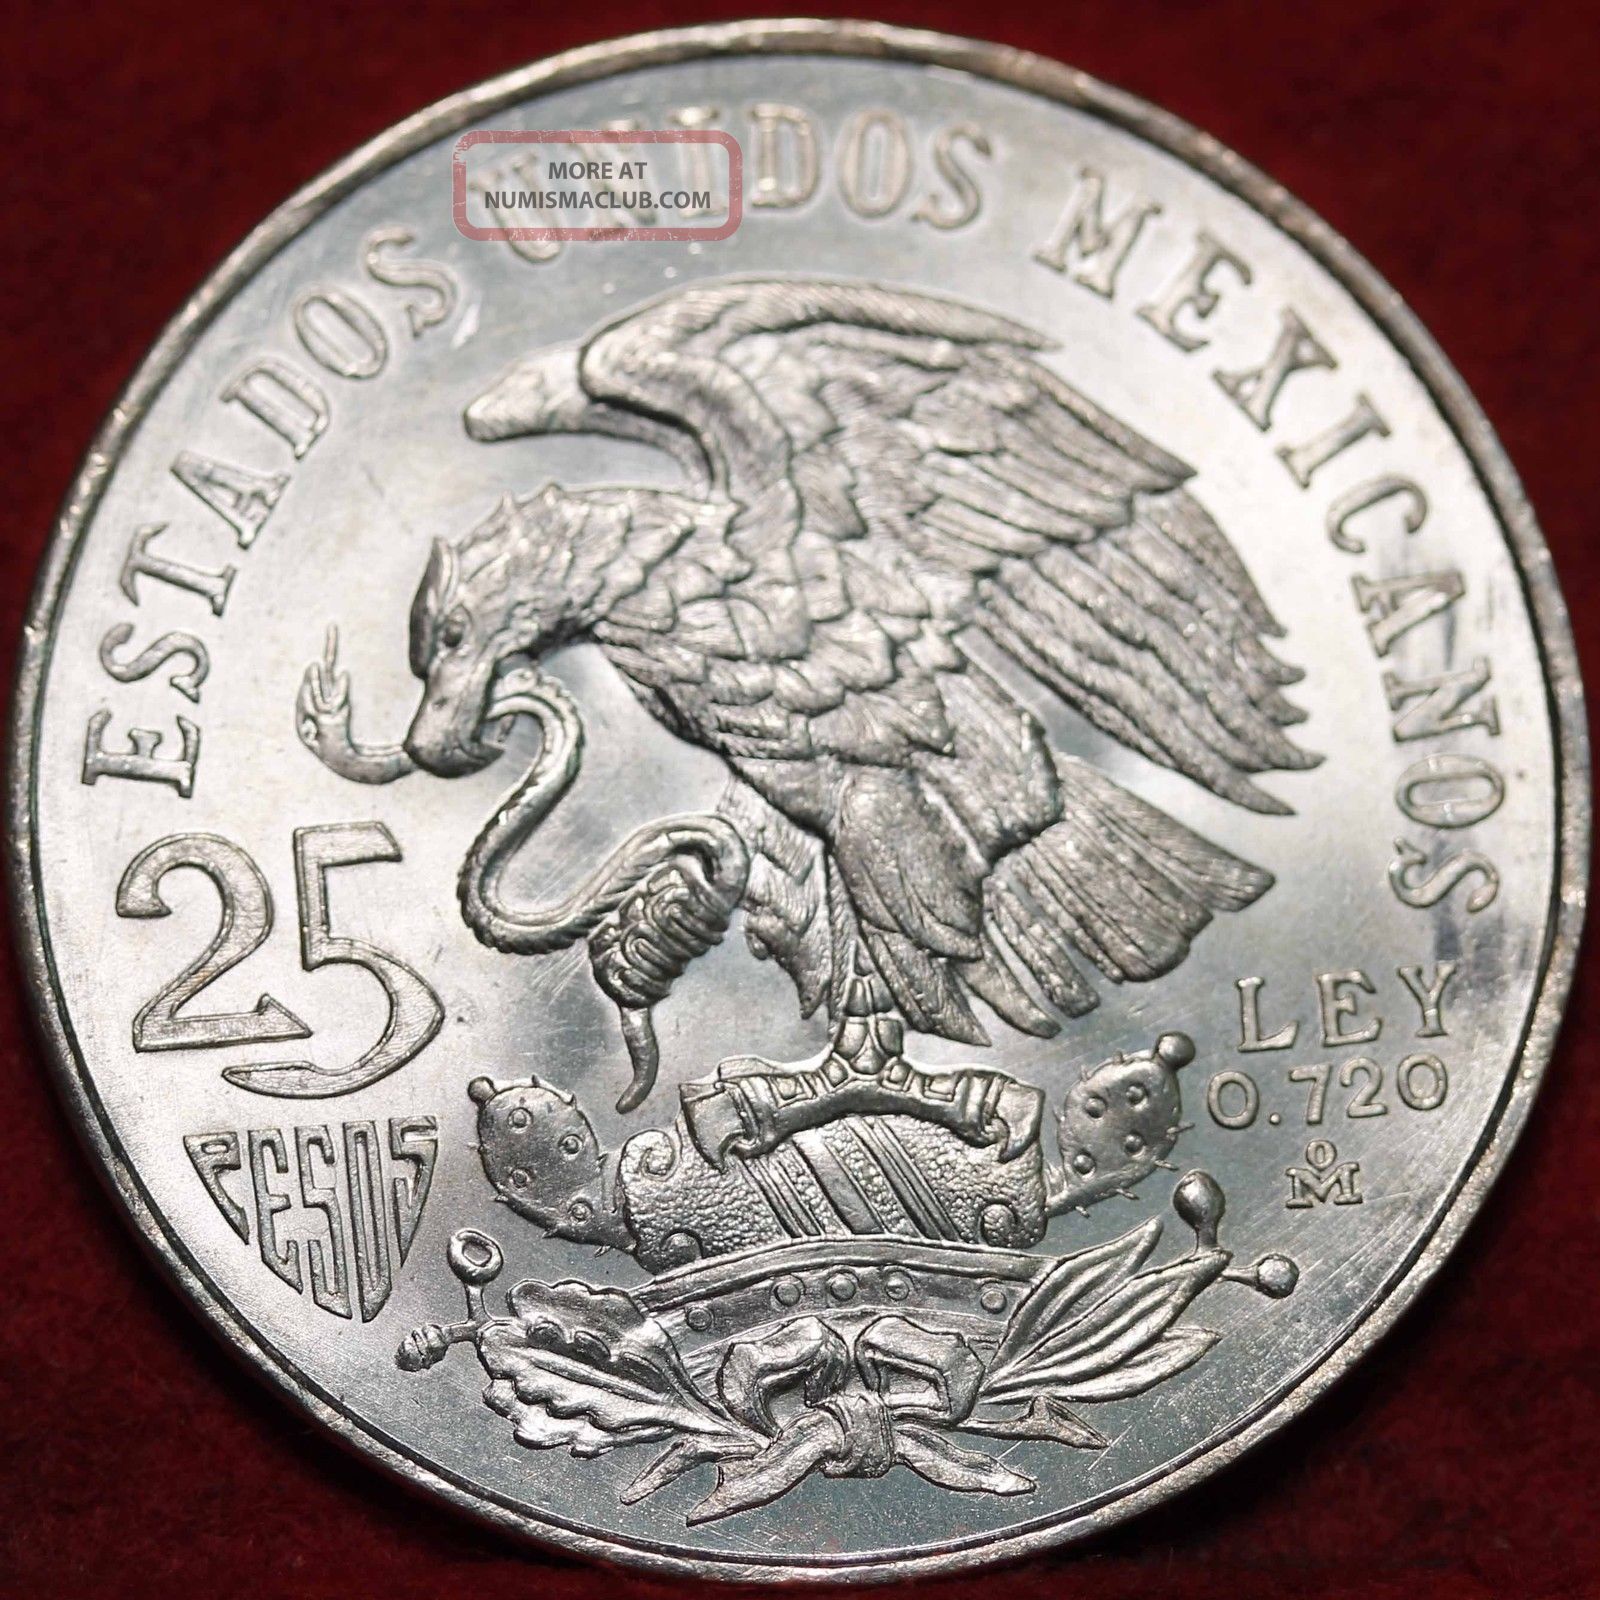 Uncirculated 1968 Mexico 25 Pesos Silver Foreign Coin S/h Mexico photo